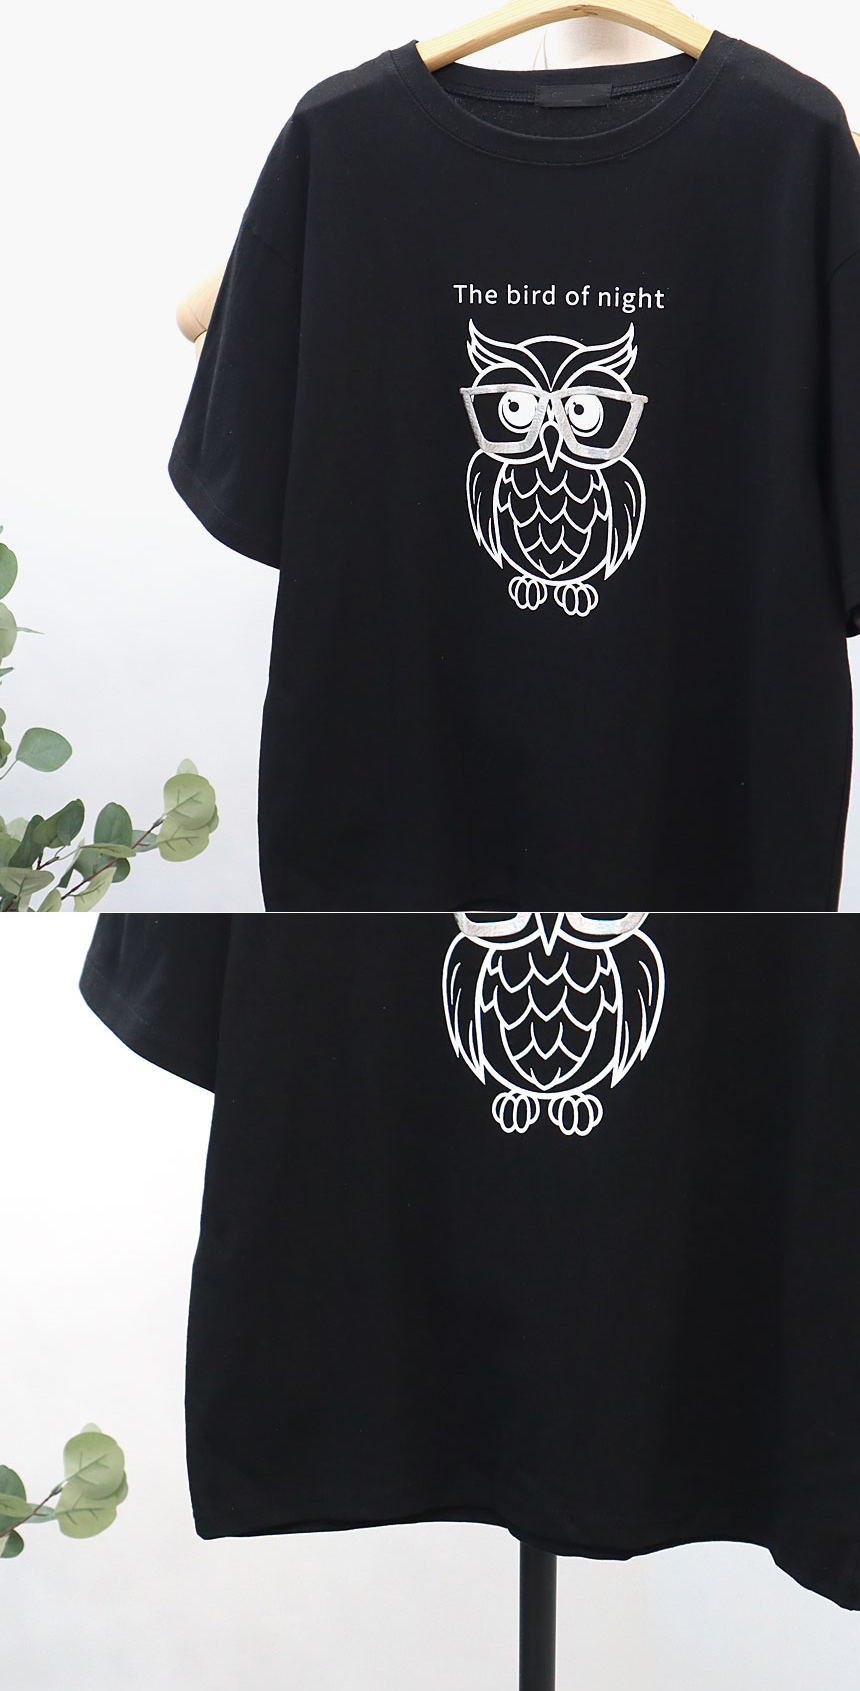 貓頭鷹與字母圖案短袖上衣